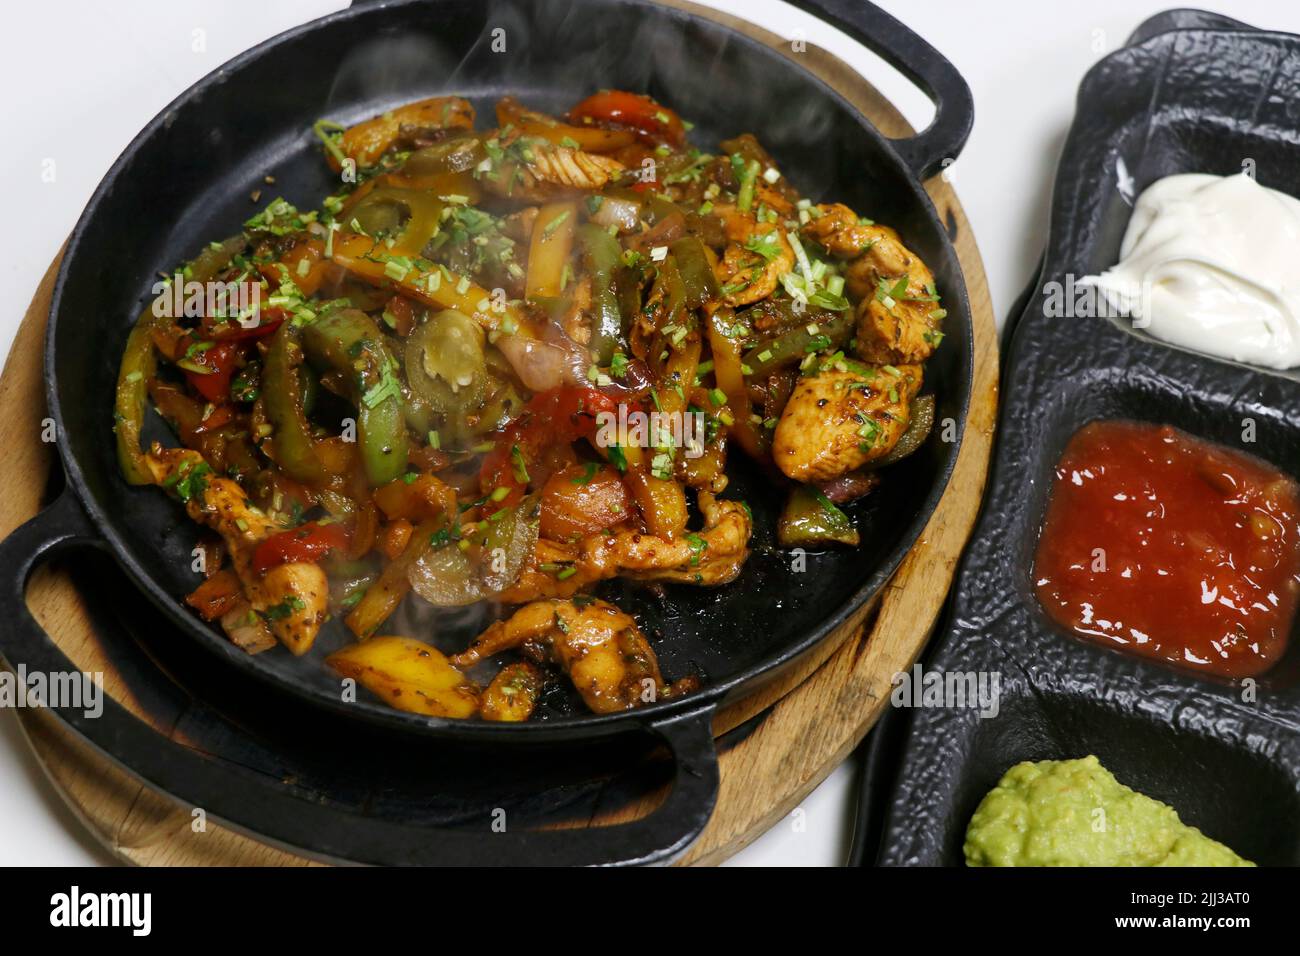 mexikanisches Essen, Chicken Fajitas auf einem heißen, rauchenden Teller mit saurer Creme, Avocado-Guacamole, Tomatensalsa und Tortilla-Brot Stockfoto